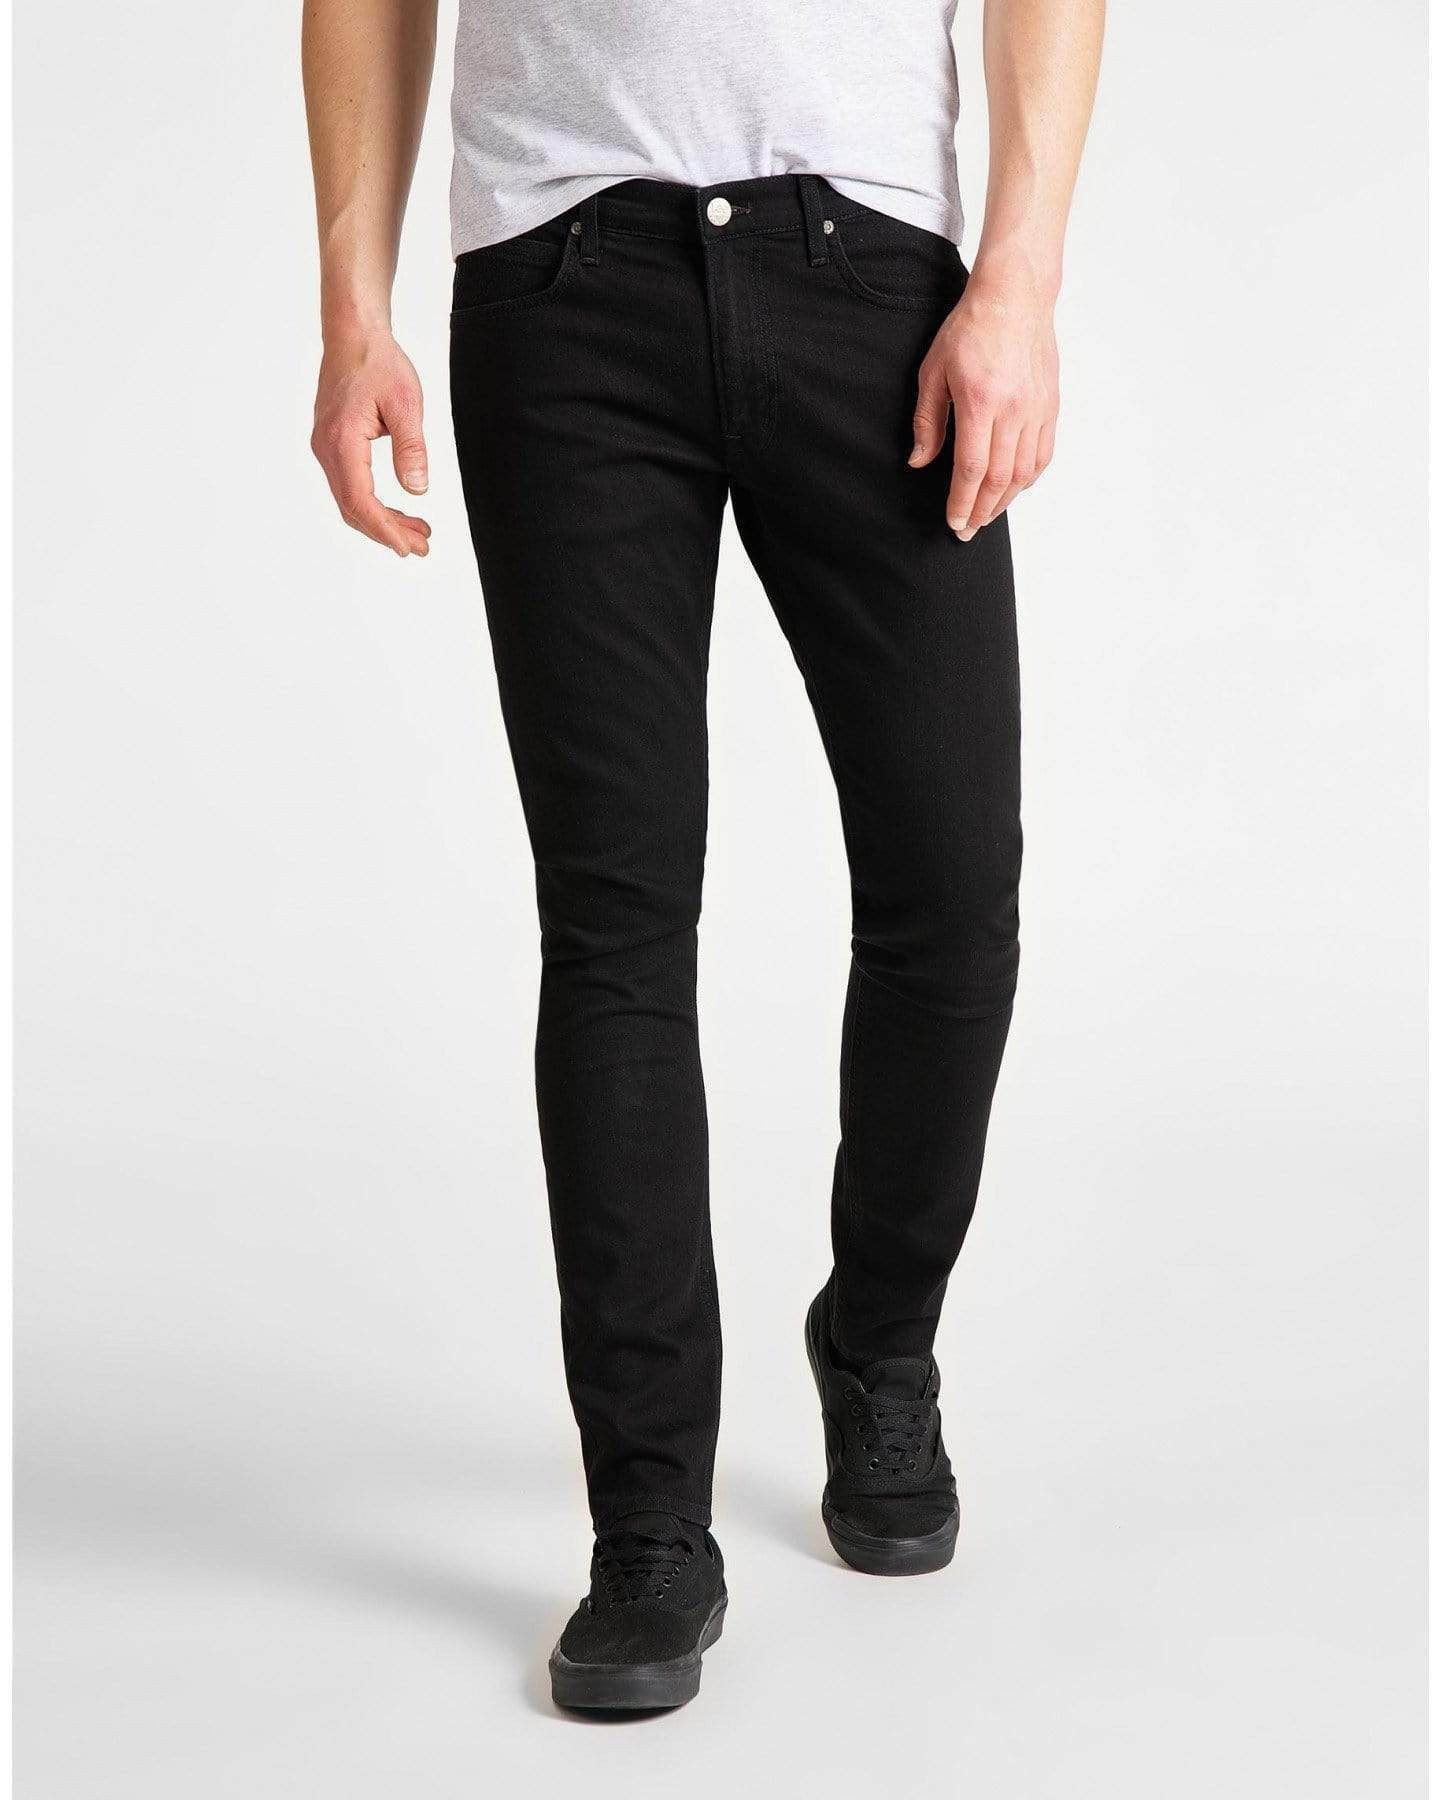 lee jeans luke black